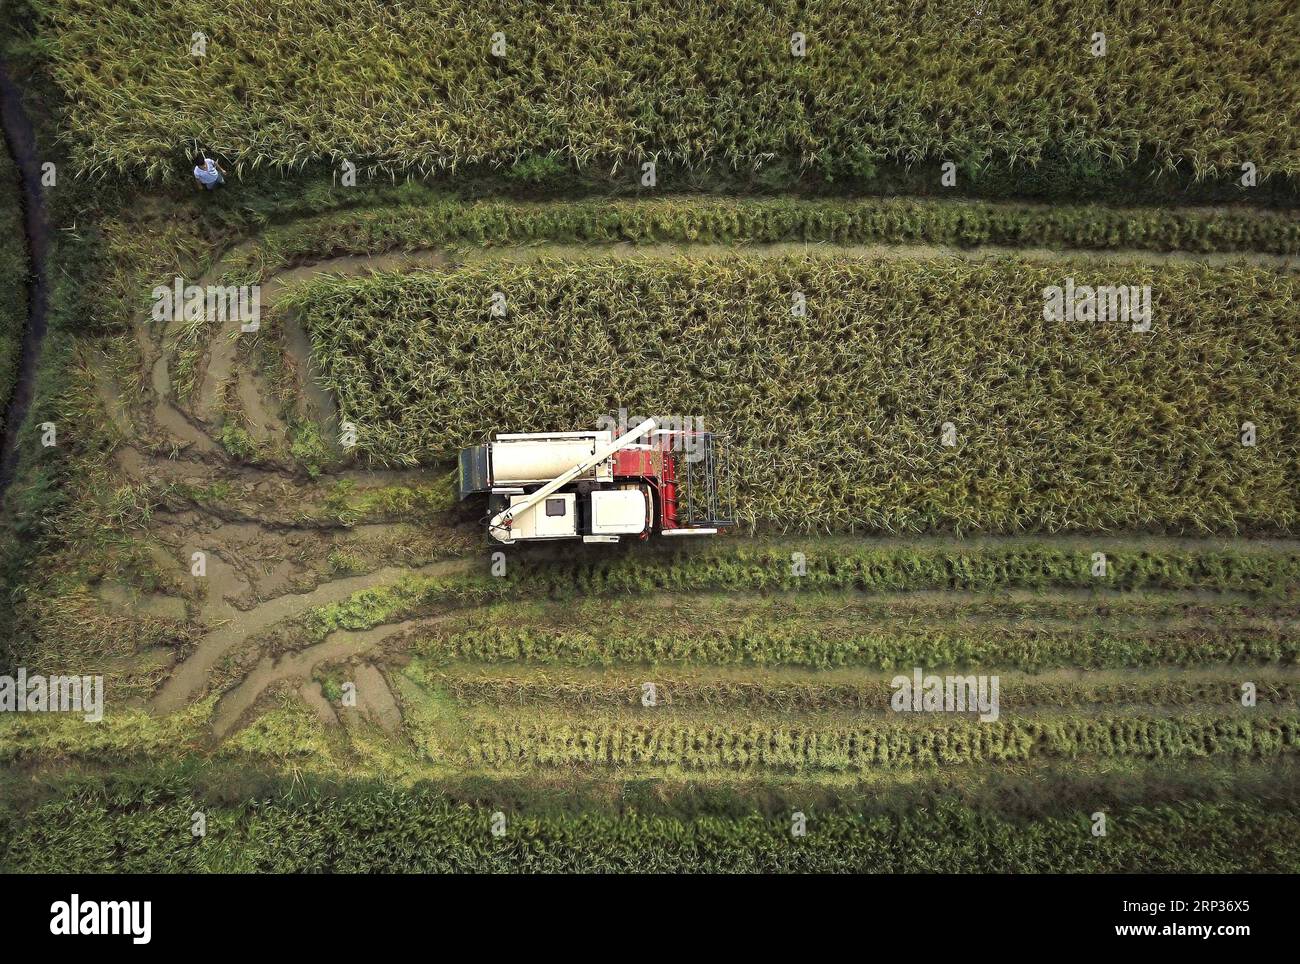 (180922) -- NANCHANG, 22. September 2018 -- Zhou Xiaolin und Zhou Biao ernten Reis im liutianischen Dorf des Bezirks Xinjian in Nanchang, ostchinesische Provinz Jiangxi, 21. September 2018. Wenn jede Erntesaison für Reis in der Zwischensaison im September beginnt, werden Zhou Xiaolin, ein Reisanbauer, und sein Sohn Zhou Biao anderen Landwirten bei der Ernte immer Hilfe anbieten, da nur wenige Familien in der Nähe mehrere landwirtschaftliche Maschinen besitzen, die die Arbeitsbelastung ausreichend erfüllen. Zhou Xiaolin wurde im Dorf Liutian geboren und war früher Zimmermann. 2005 kehrte er nach Hause zurück, um sich mit dem Reisanbau zu beschäftigen. Zwei Jahre später, Zhou Xiaolin Stockfoto